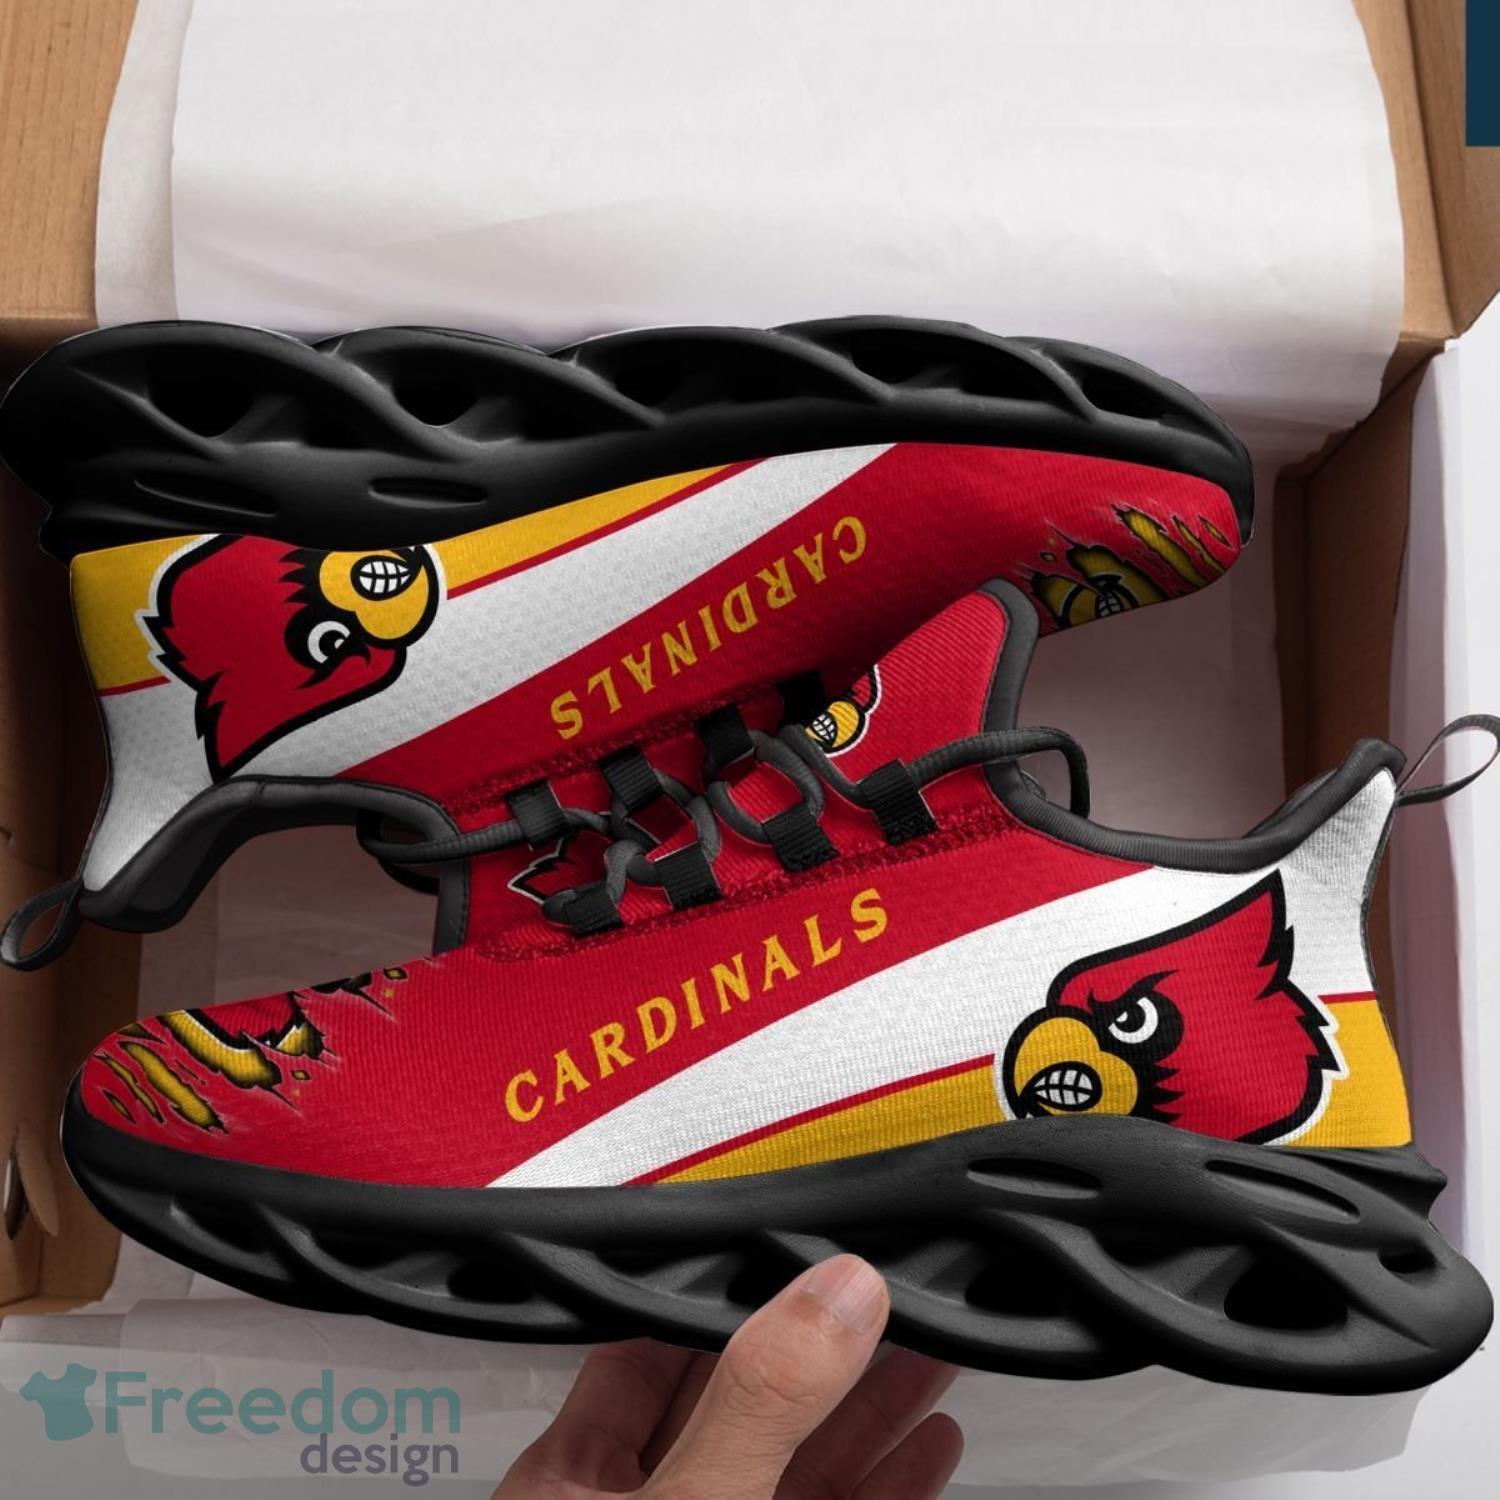 Louisville Cardinals Women's AllCardinals Sneakers